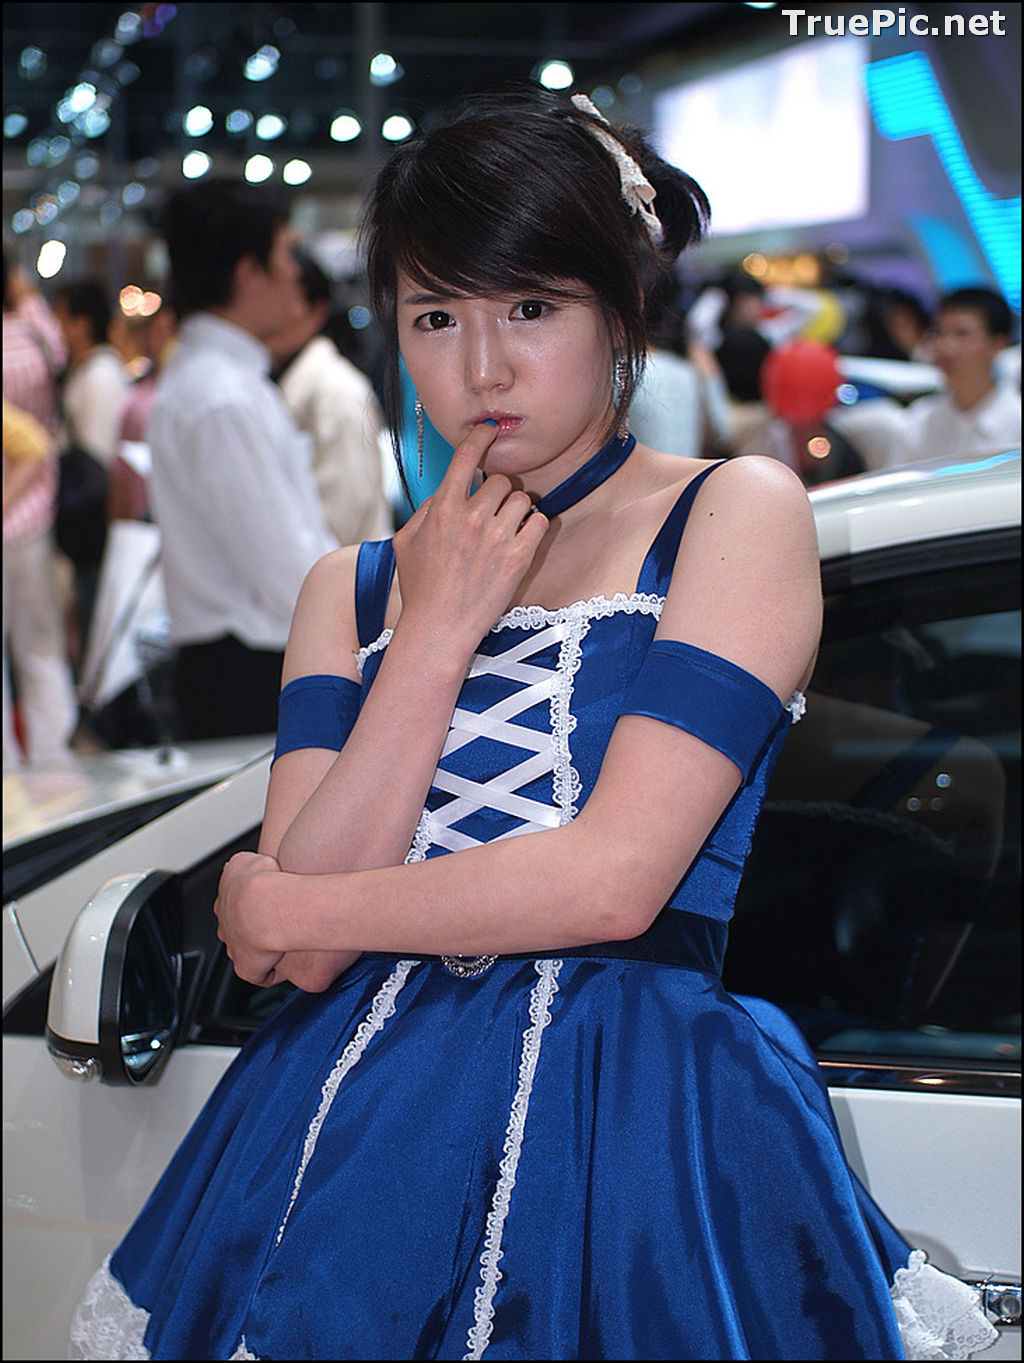 Image Best Beautiful Images Of Korean Racing Queen Han Ga Eun #3 - TruePic.net - Picture-48